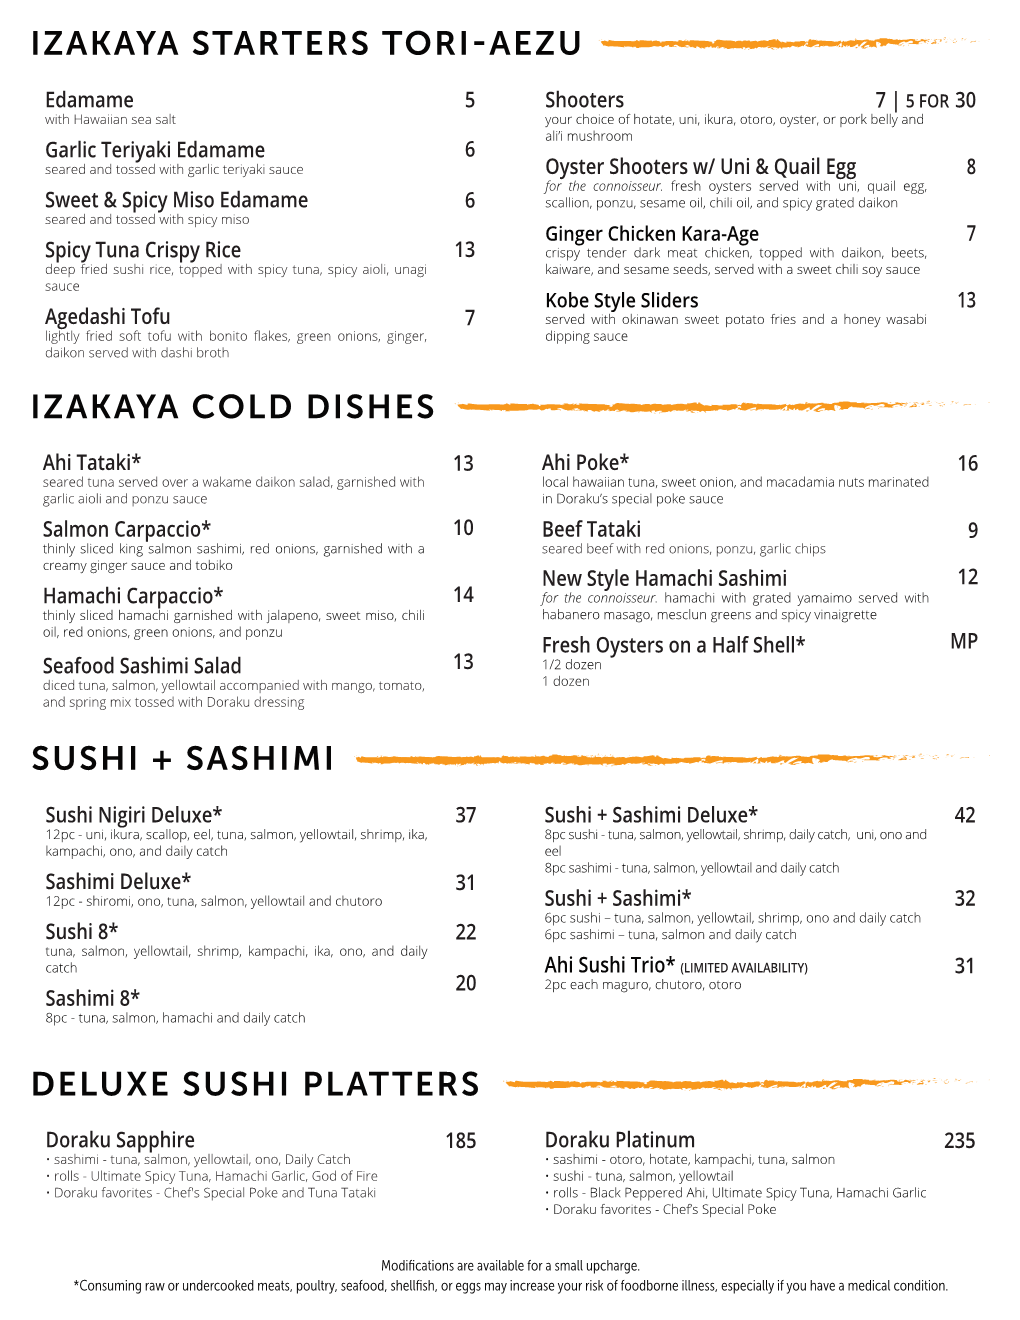 Izakaya Cold Dishes Sushi + Sashimi